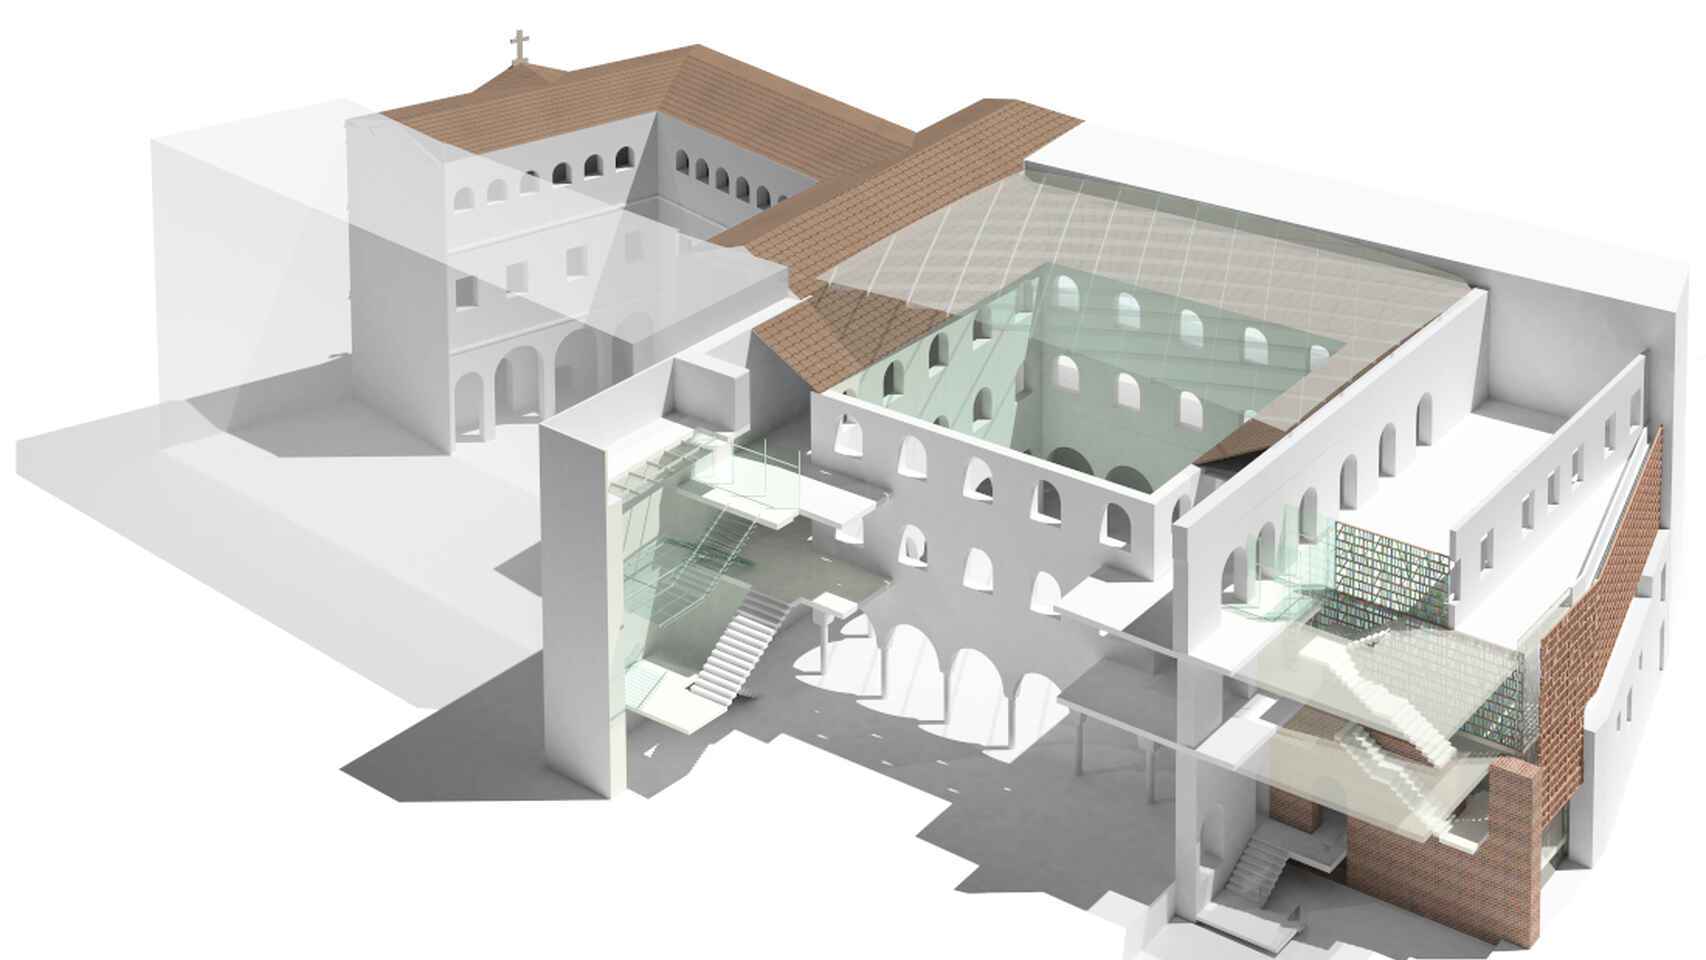 Maqueta de la ordenación de la futura Biblioteca del Estado en Málaga.